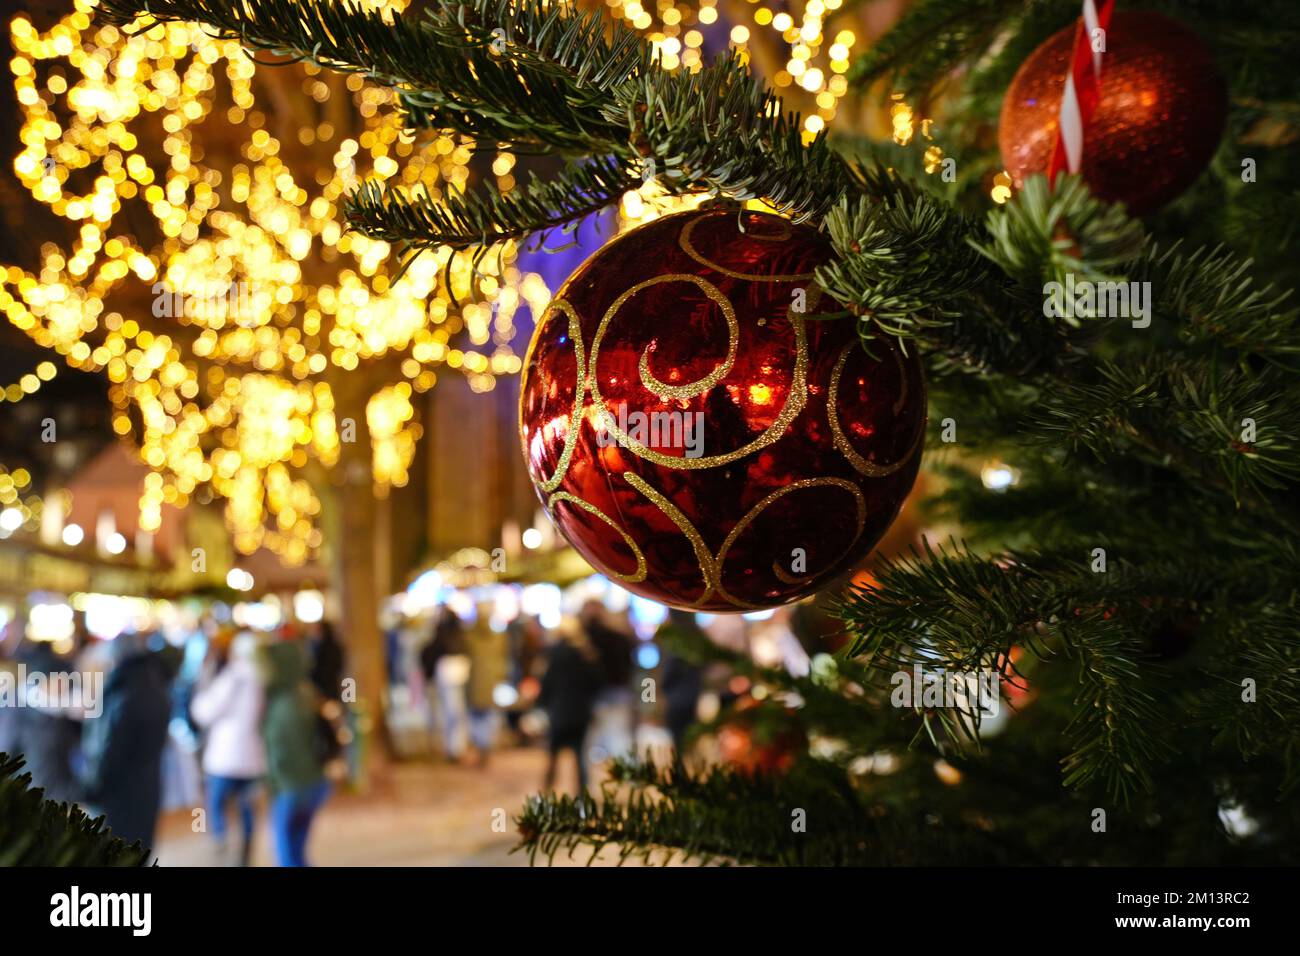 La décoration du marché de Noël est un symbole des vacances d'hiver et du nouvel an. Colmar. Alsace. France. Banque D'Images